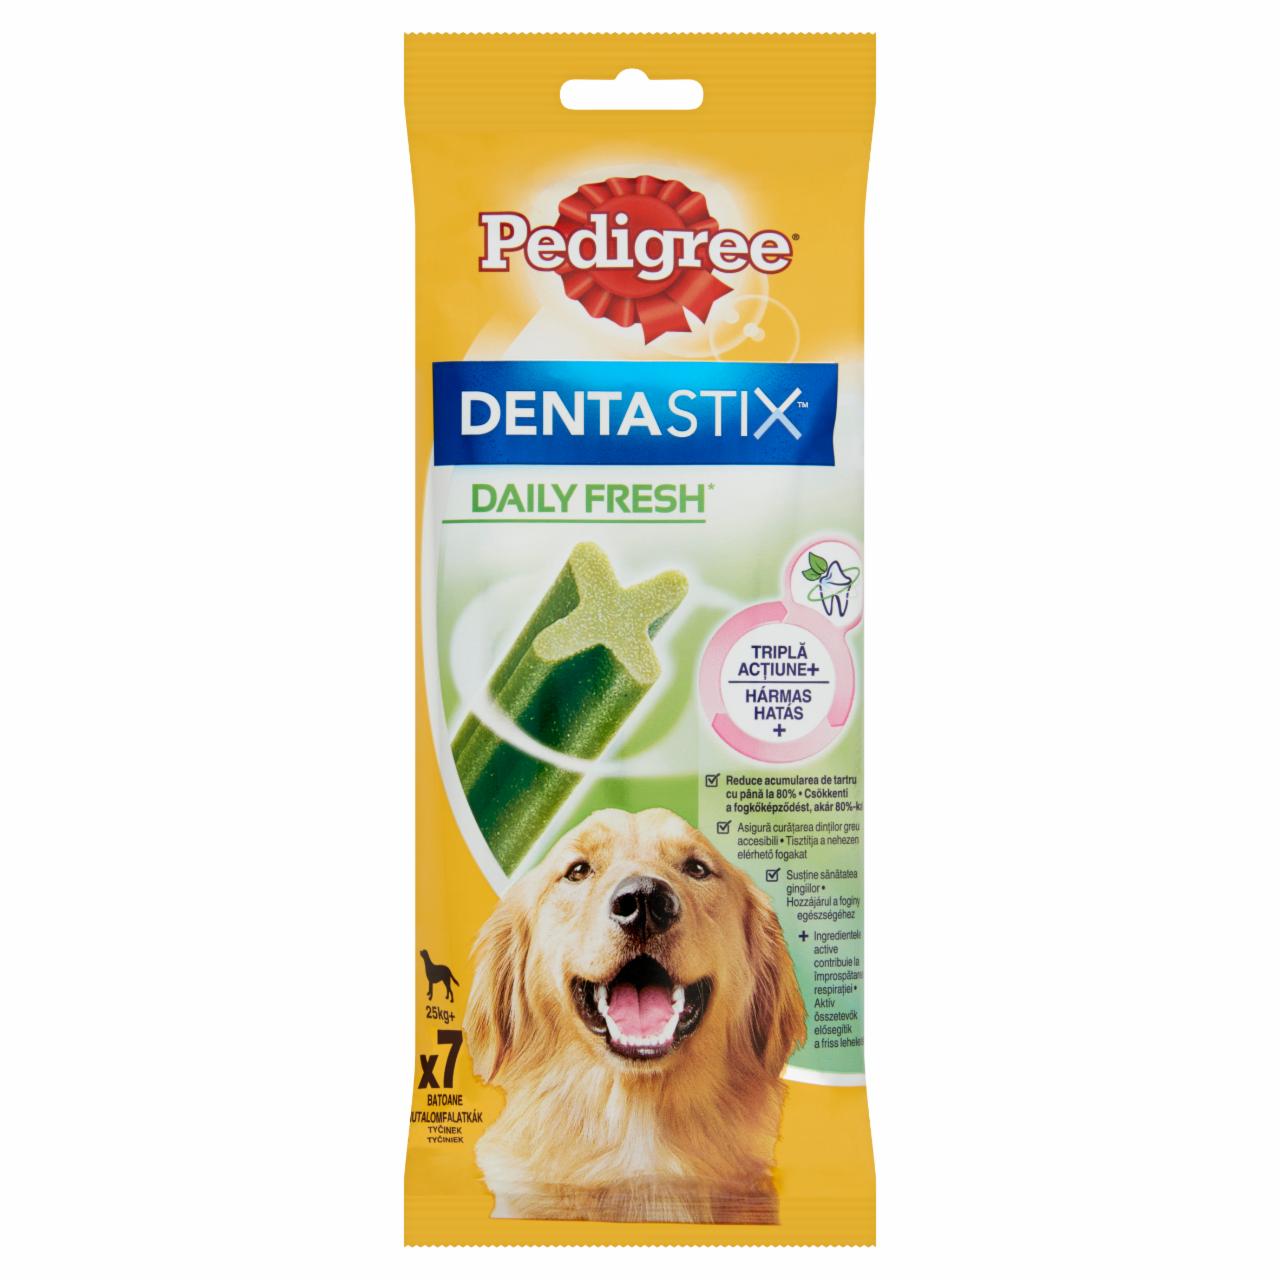 Képek - Pedigree DentaStix Daily Fresh jutalomfalat kutyák számára 270 g